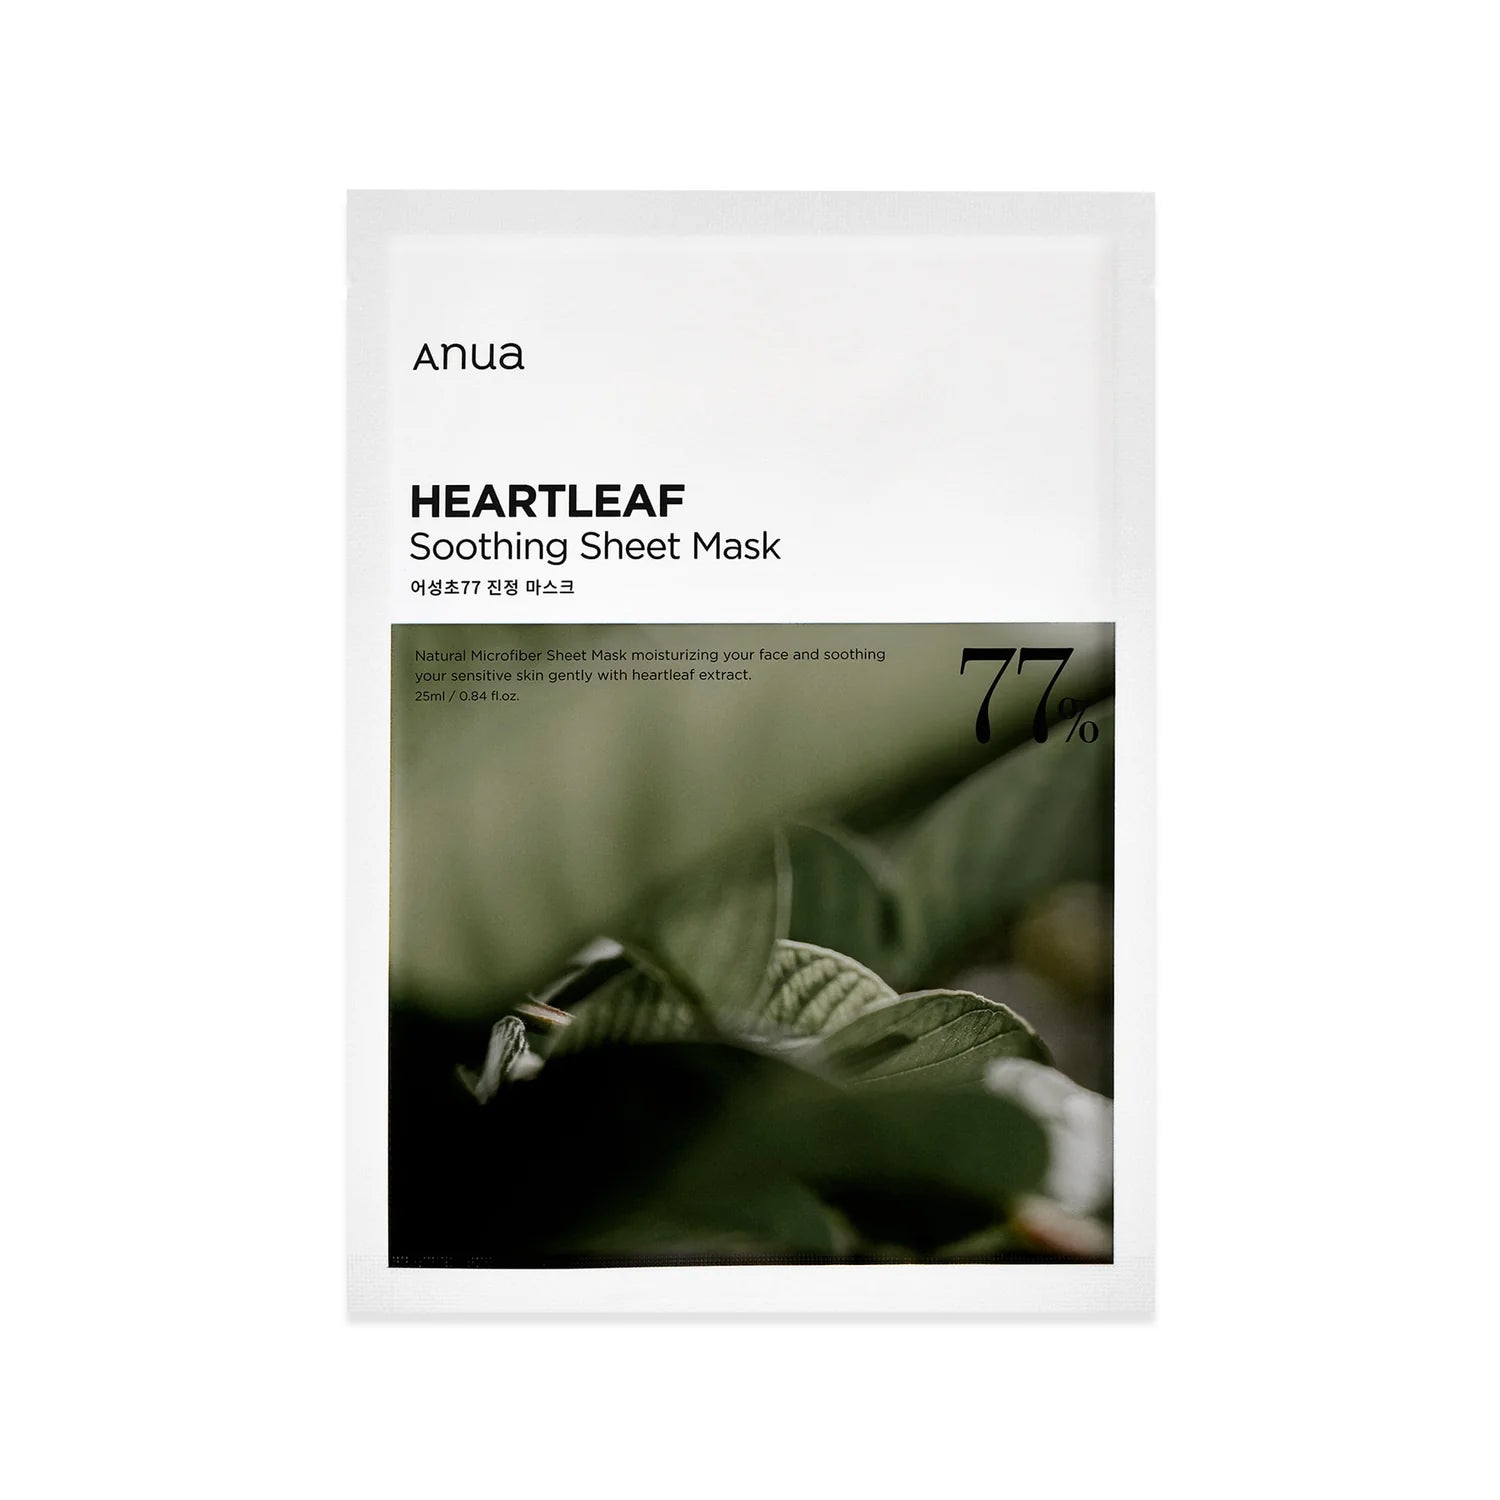 Buy Anua Heartleaf Soothing Sheet Mask online